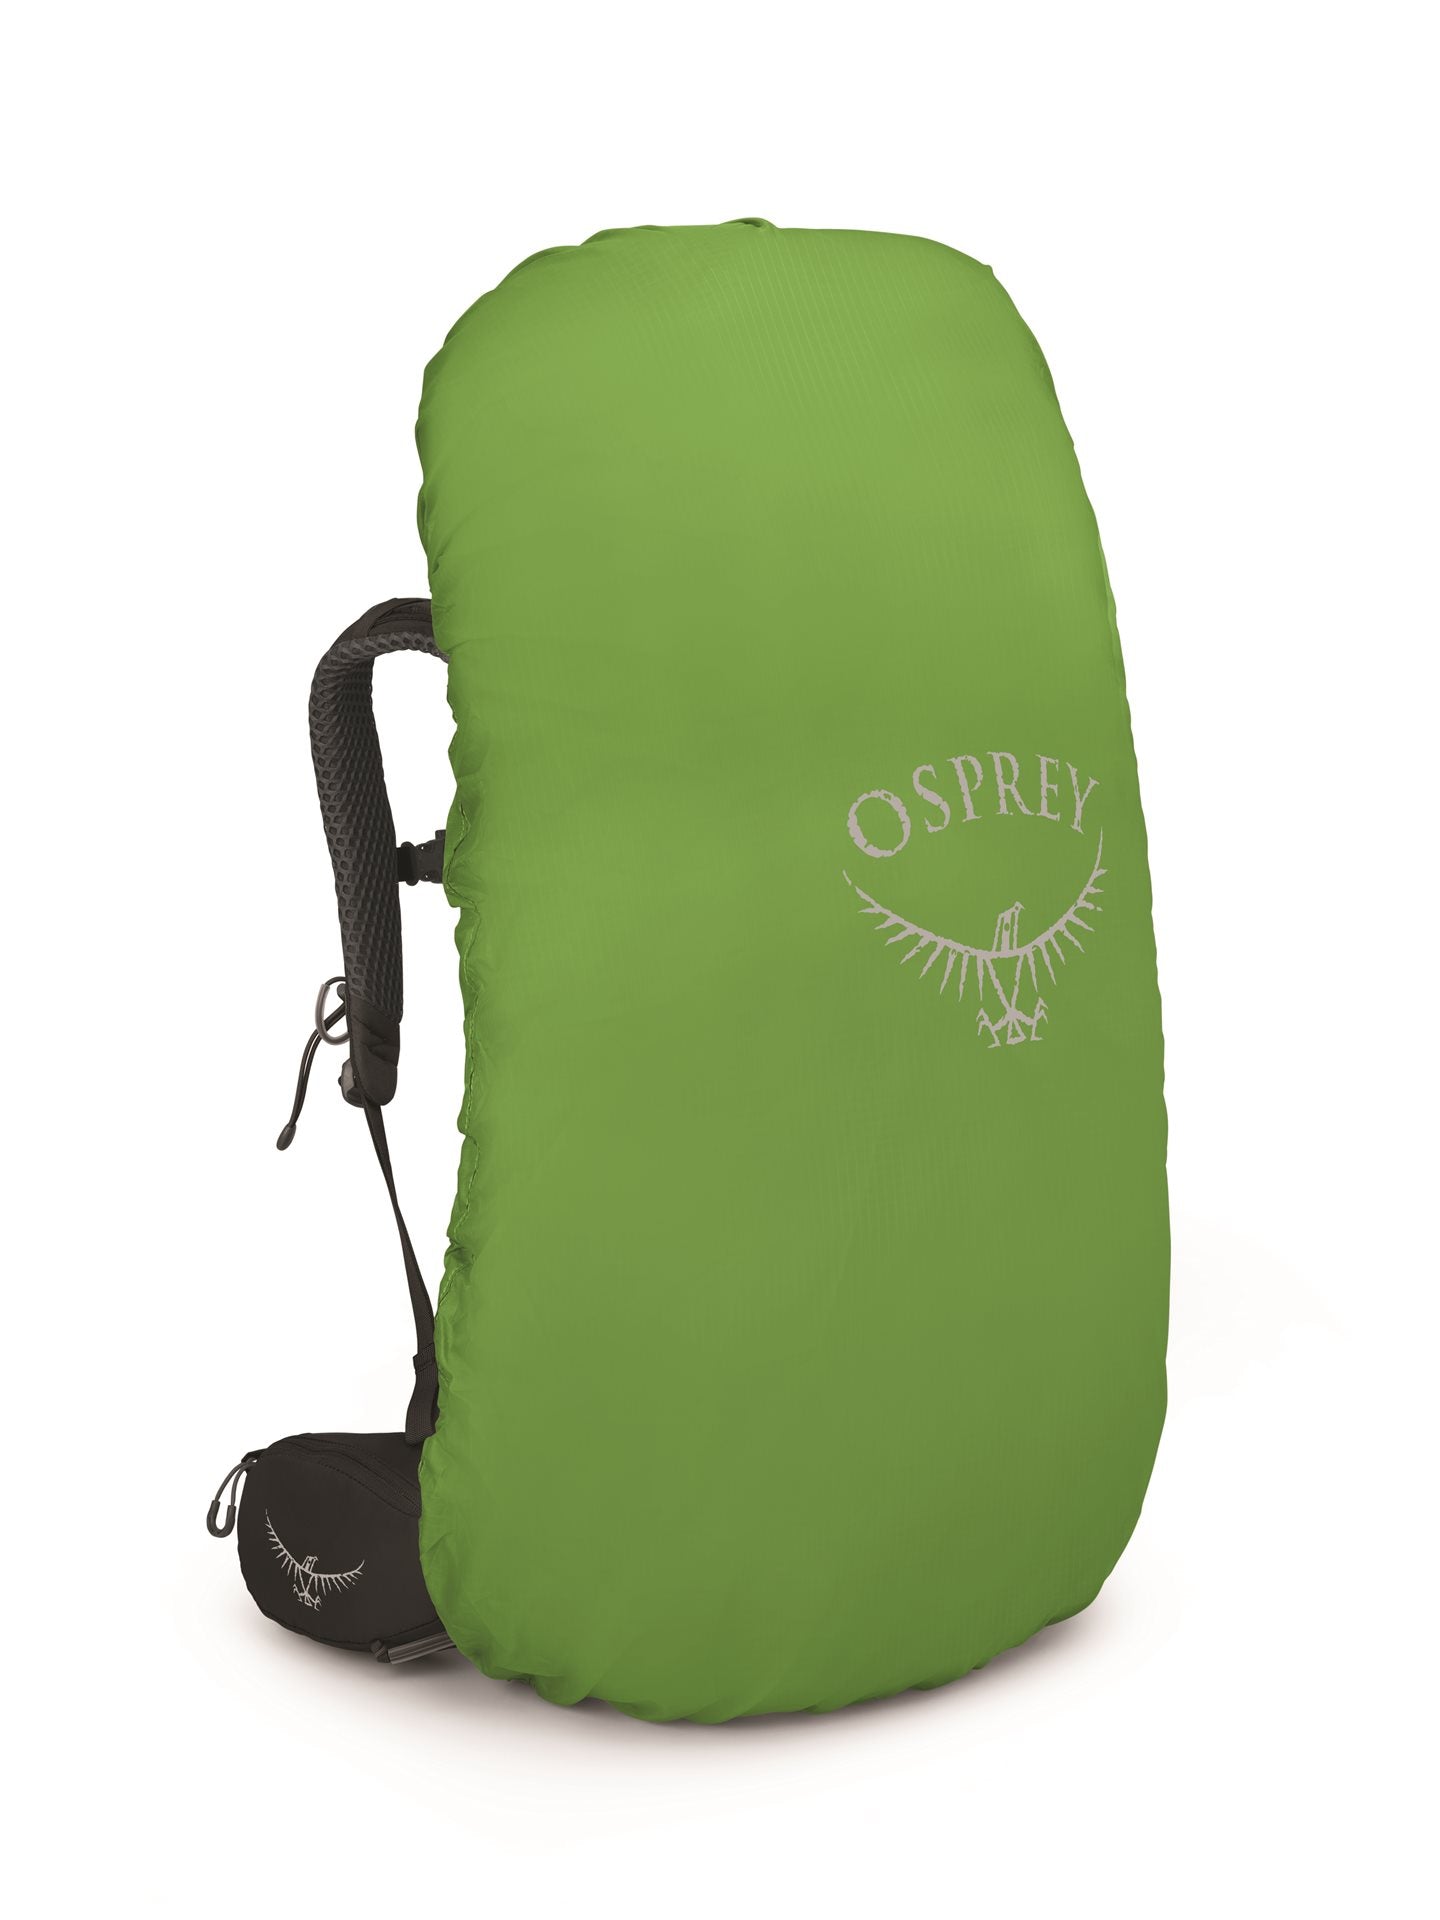 Osprey Kyte 68 Black W Backpack - Reisartikelen-nl